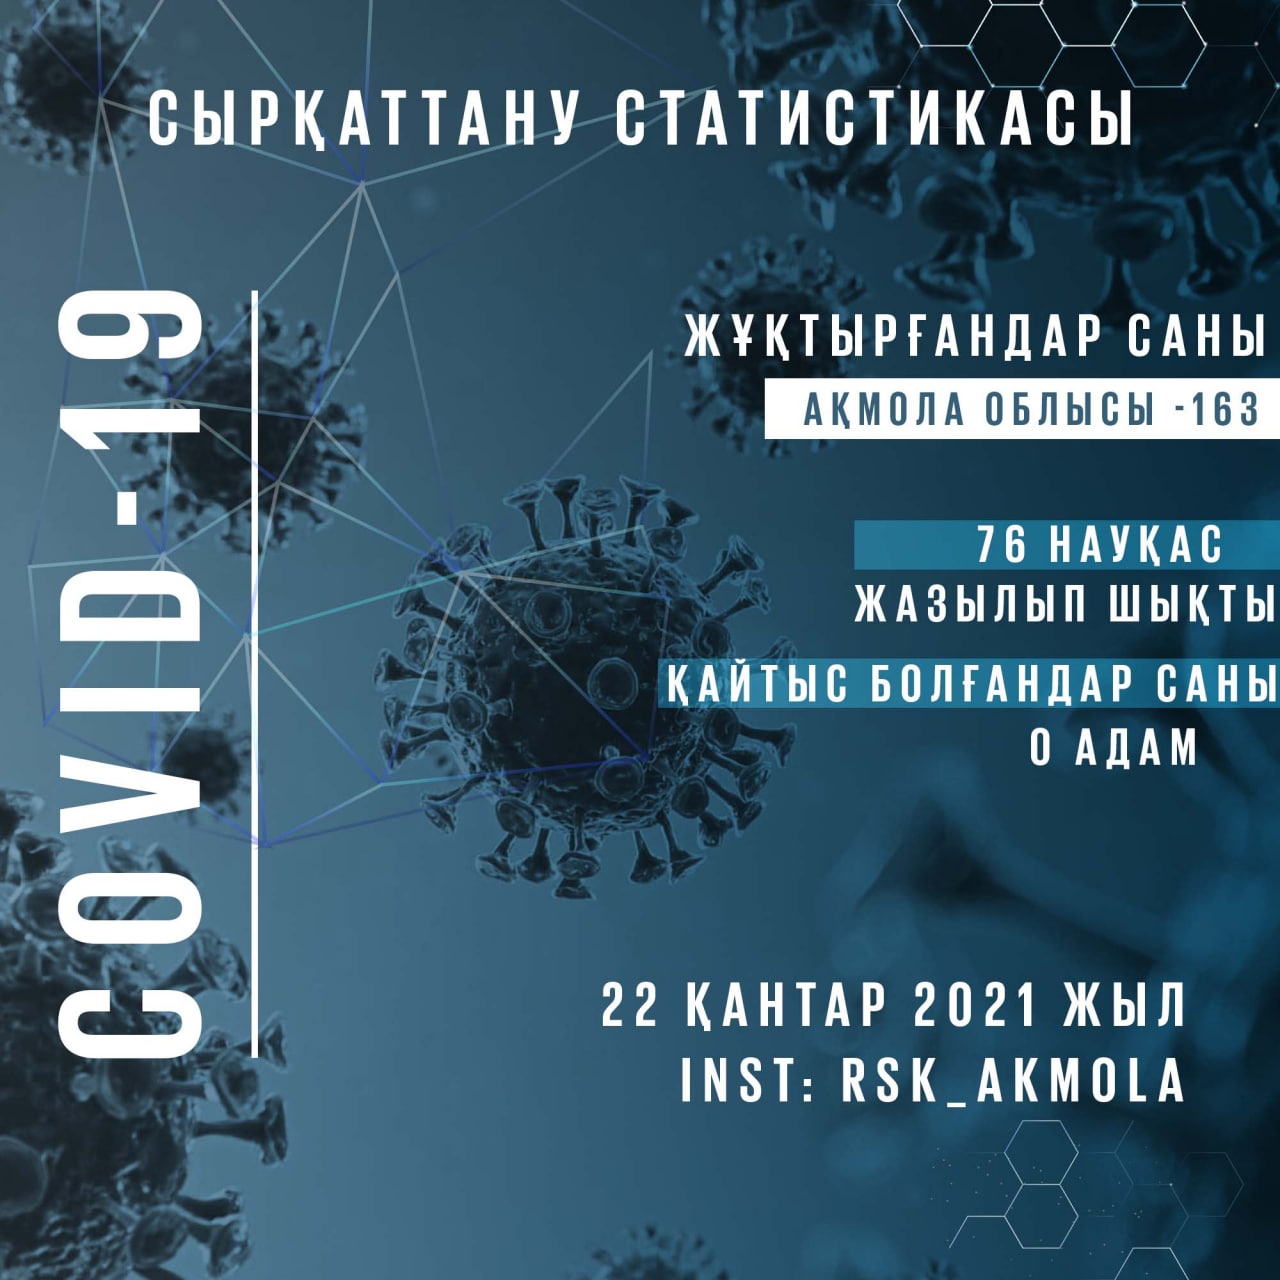 Ақмола облысы бойынша 2021 жылдың 22 қаңтарына коронавирустық инфекция белгілері бар пневмониямен сырқаттанушылық туралы ақпарат